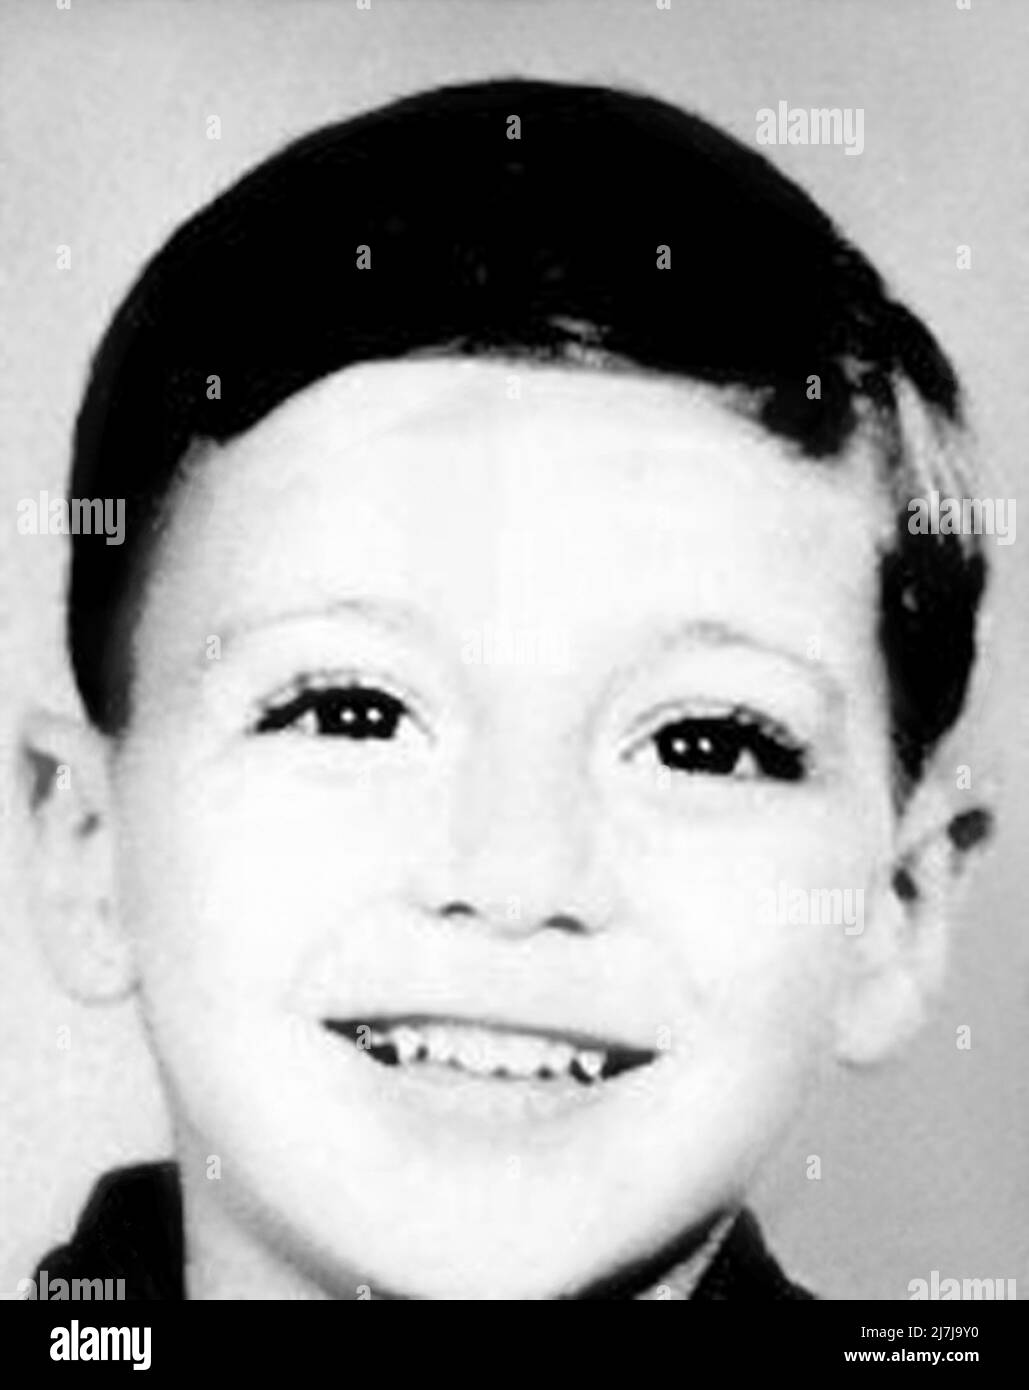 1947c., EE.UU. : El famoso actor americano AL PACINO ( nacido en 1940 )  cuando era un niño joven a los 7 años . Fotógrafo desconocido .- HISTORIA -  FOTO STORICHE -